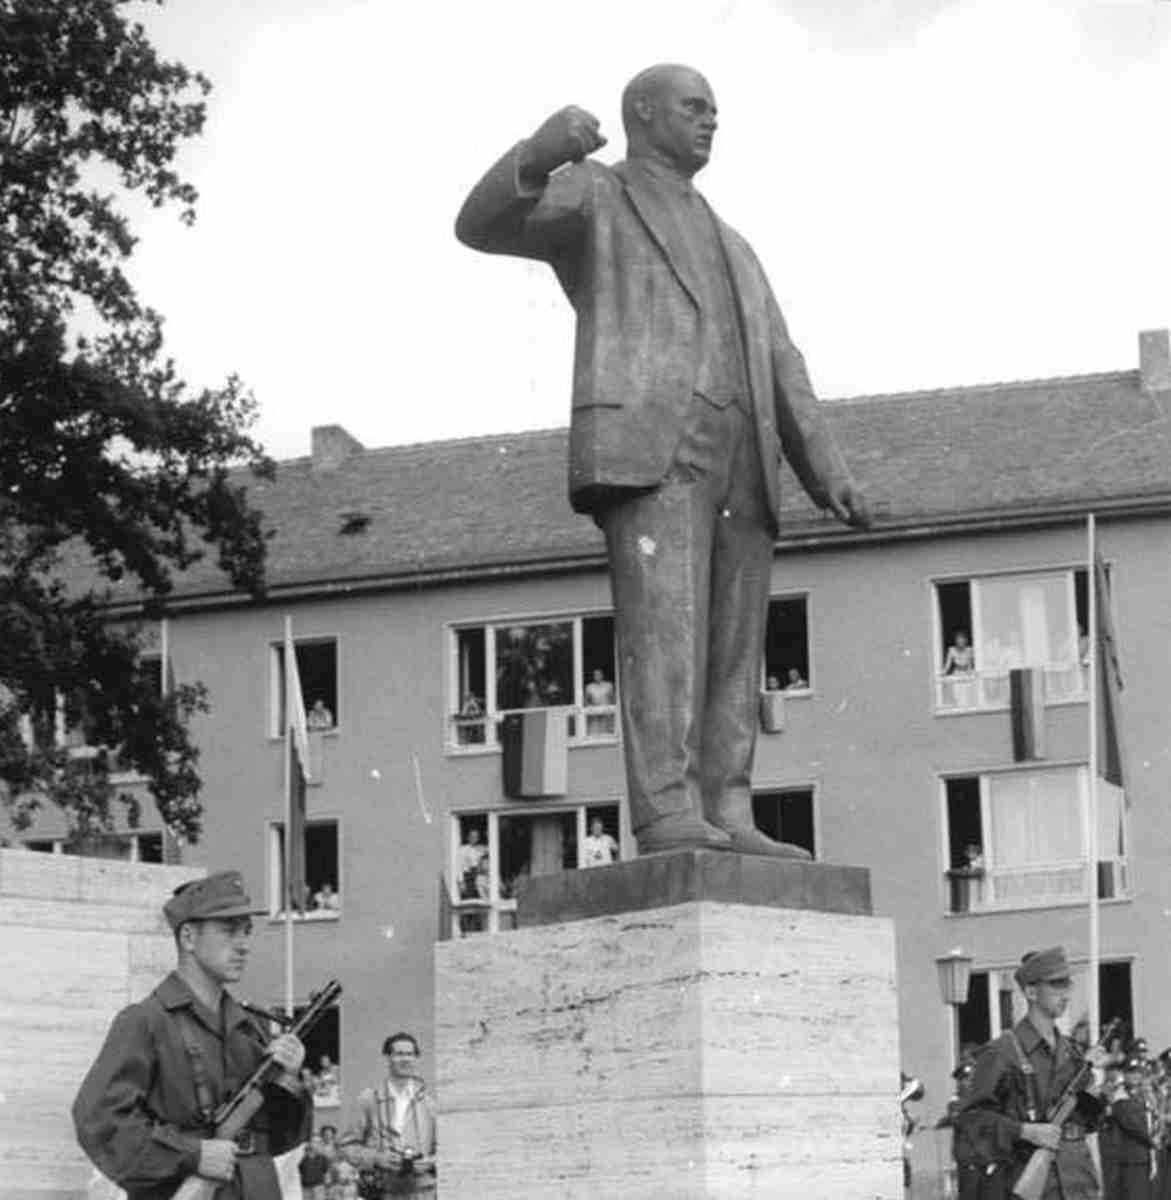 460901 thaelmann - Ernst-Thälmann-Denkmal in Weimar - Antikommunismus, Geschichte der Arbeiterbewegung - Im Bild